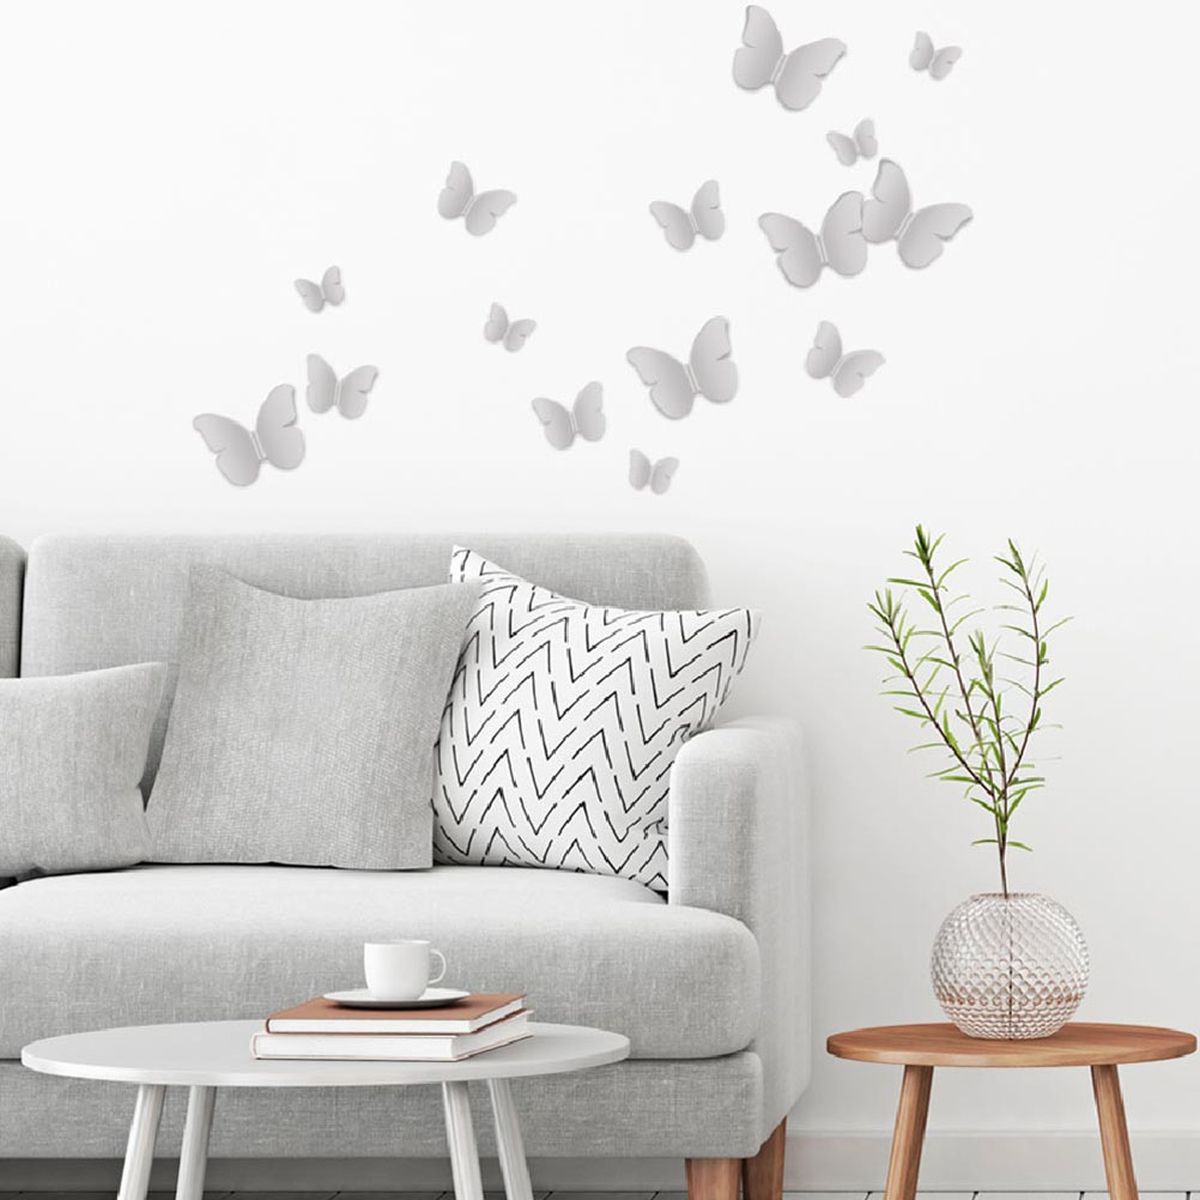 16 Decorative stickers 3D butterflies Grey